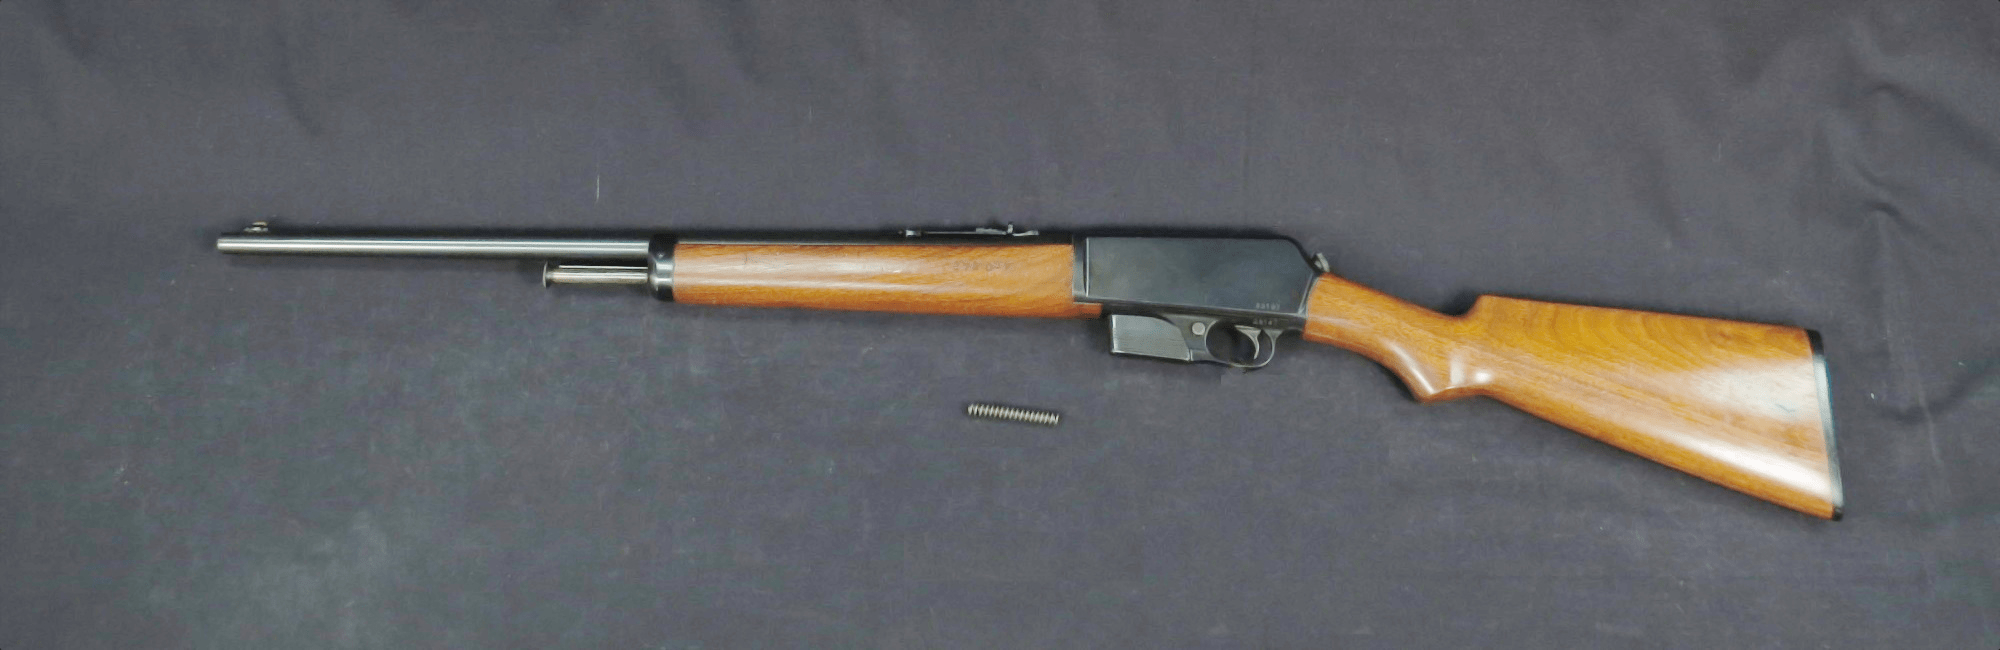 m1917步枪缺点图片